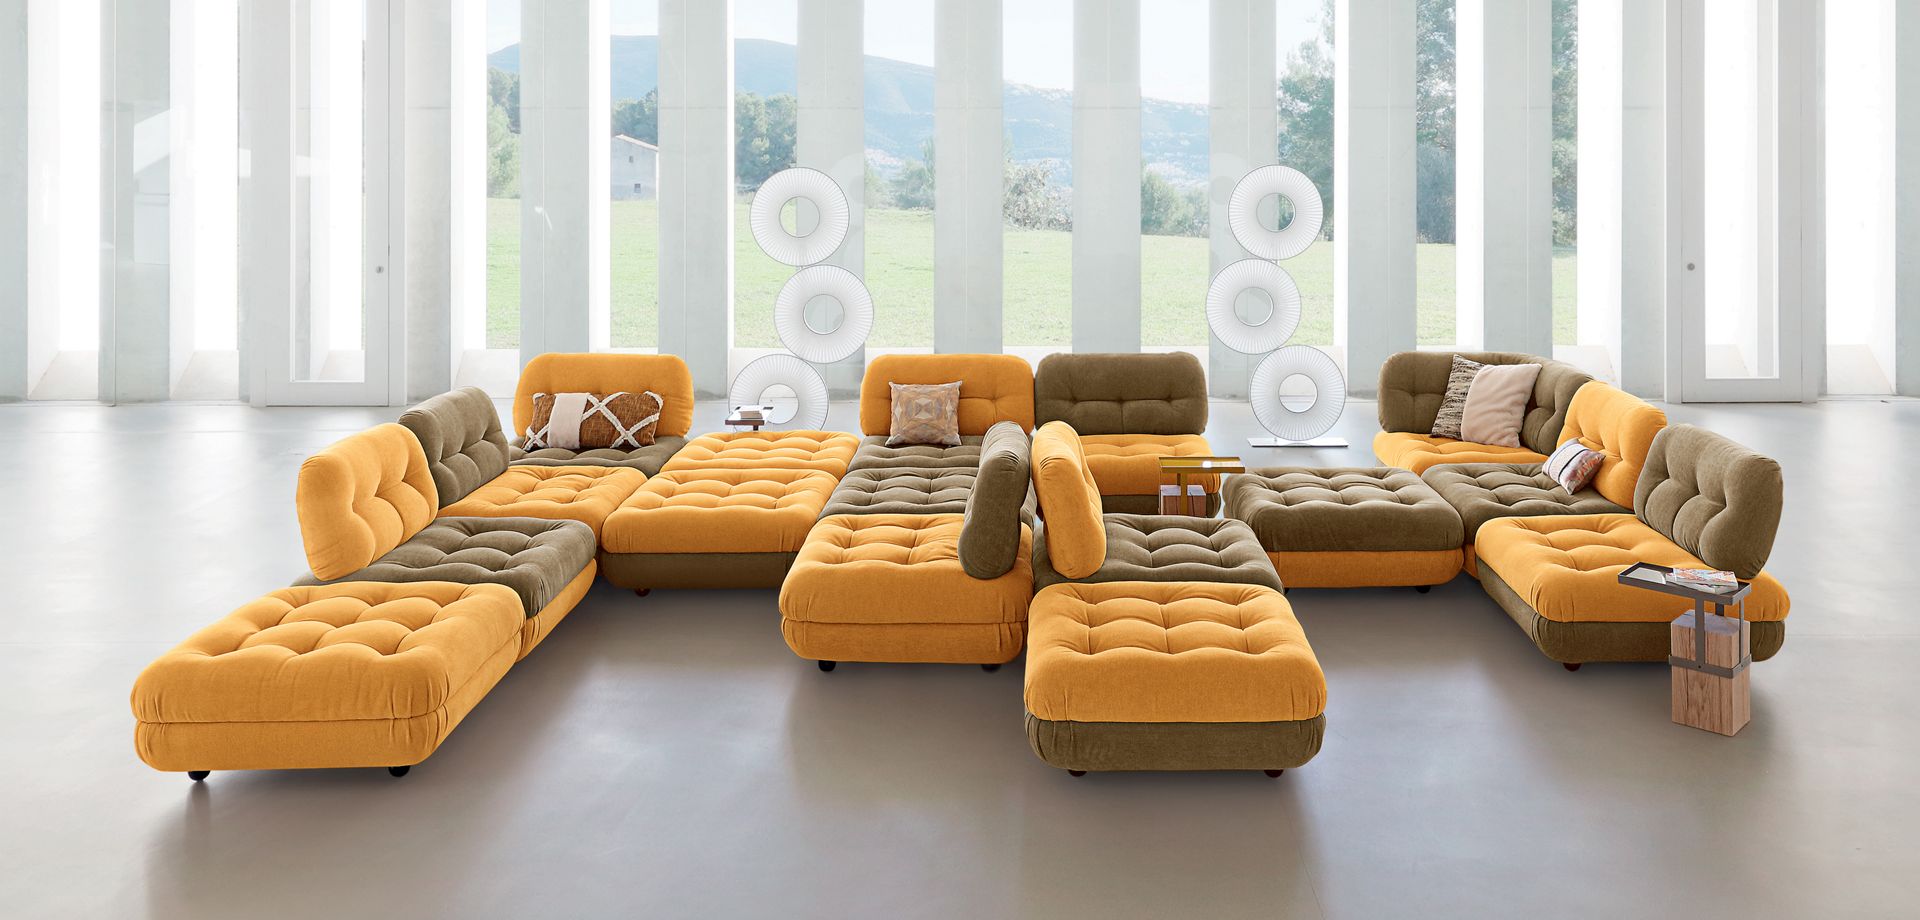 DOMINO modular sofa by elements - color version | Roche Bobois